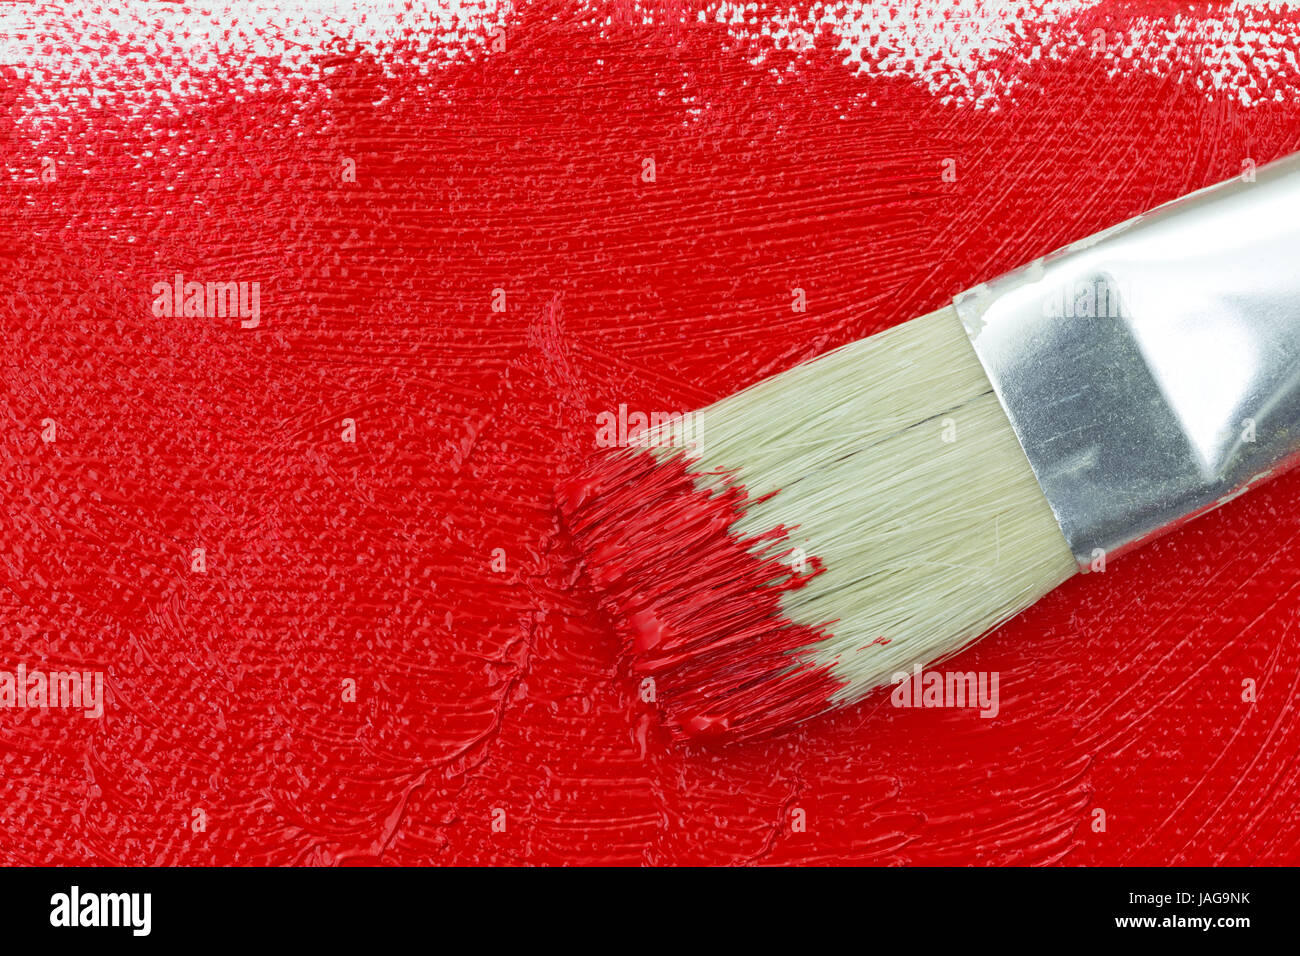 Draufsicht eines Pinsels auf nasse rote Farbe auf eine teilweise bemalte Leinwand. Stockfoto